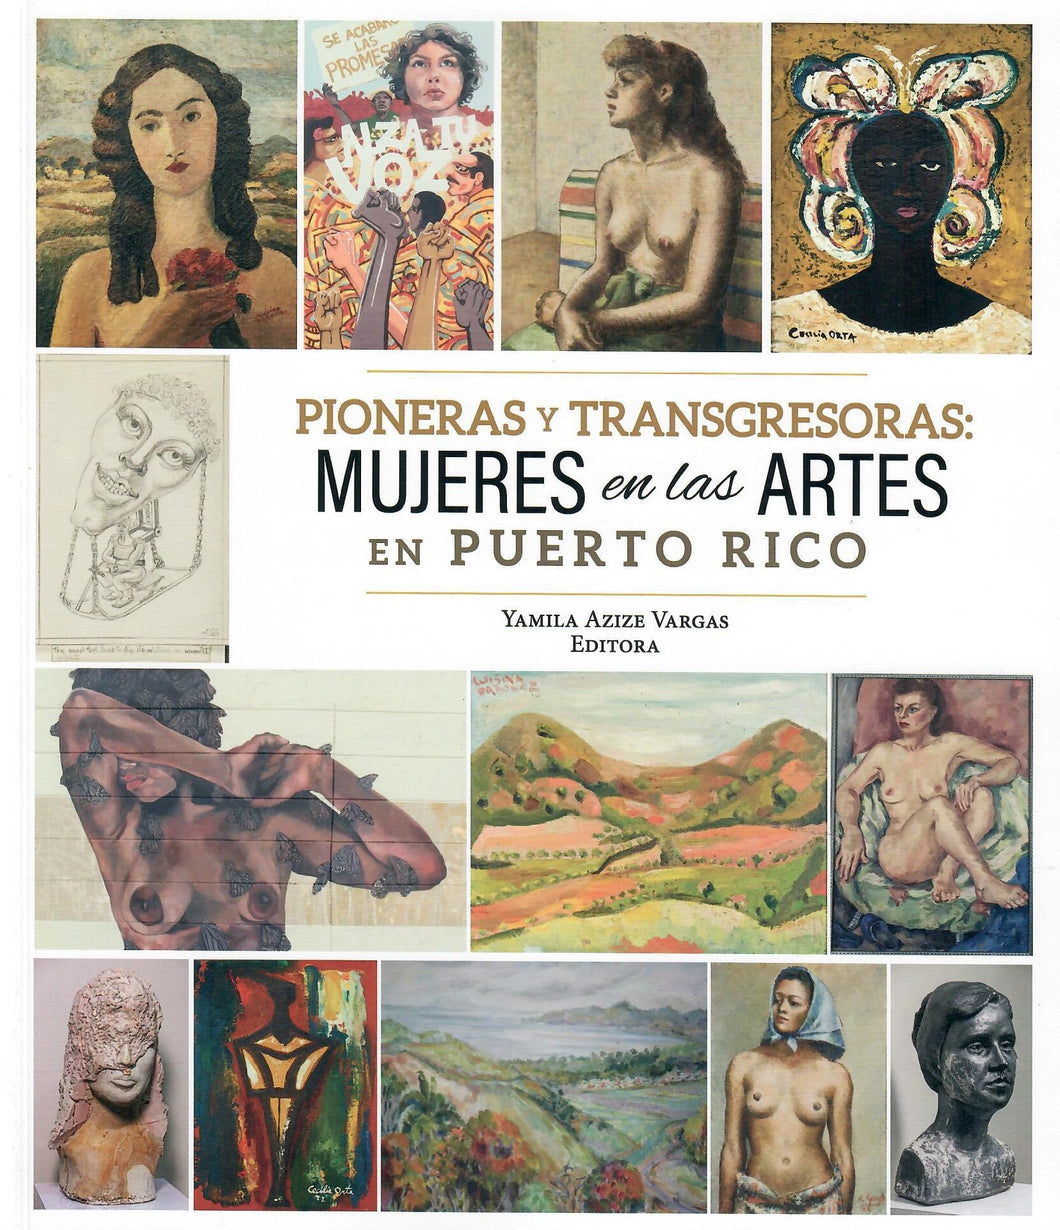 PIONERAS Y TRANSGRESORAS - Yamila Azize Vargas, Editora